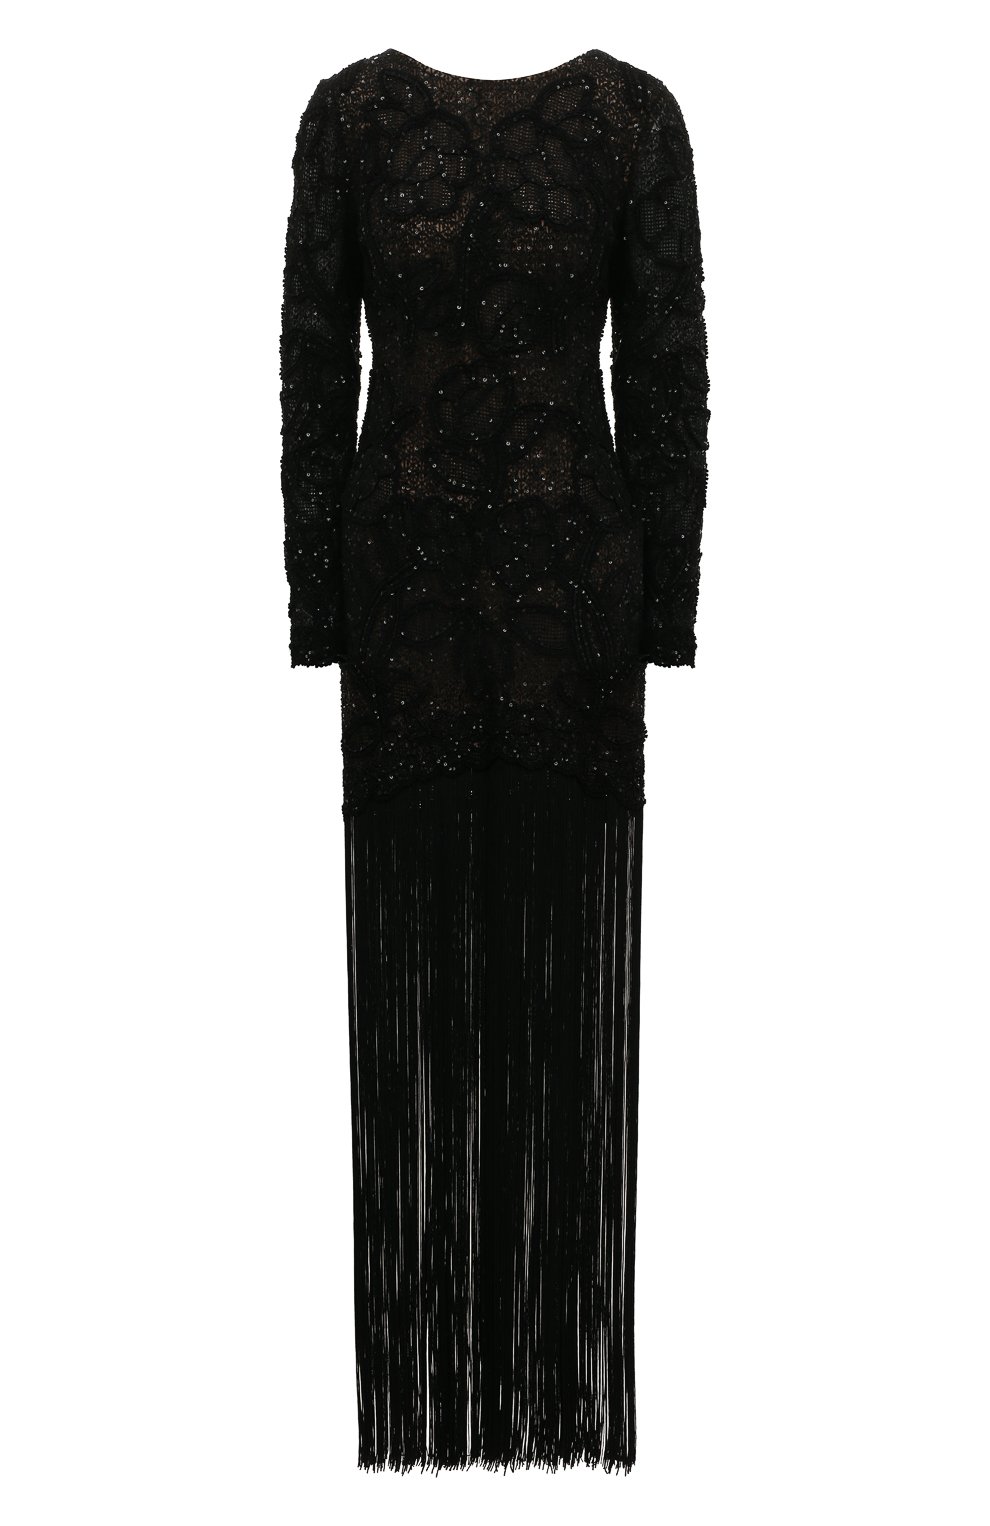 Платья Oscar de la Renta, Платье с отделкой пайетками Oscar de la Renta, США, Чёрный, Полиамид: 100%; Подкладка-шелк: 100%;, 12878319  - купить